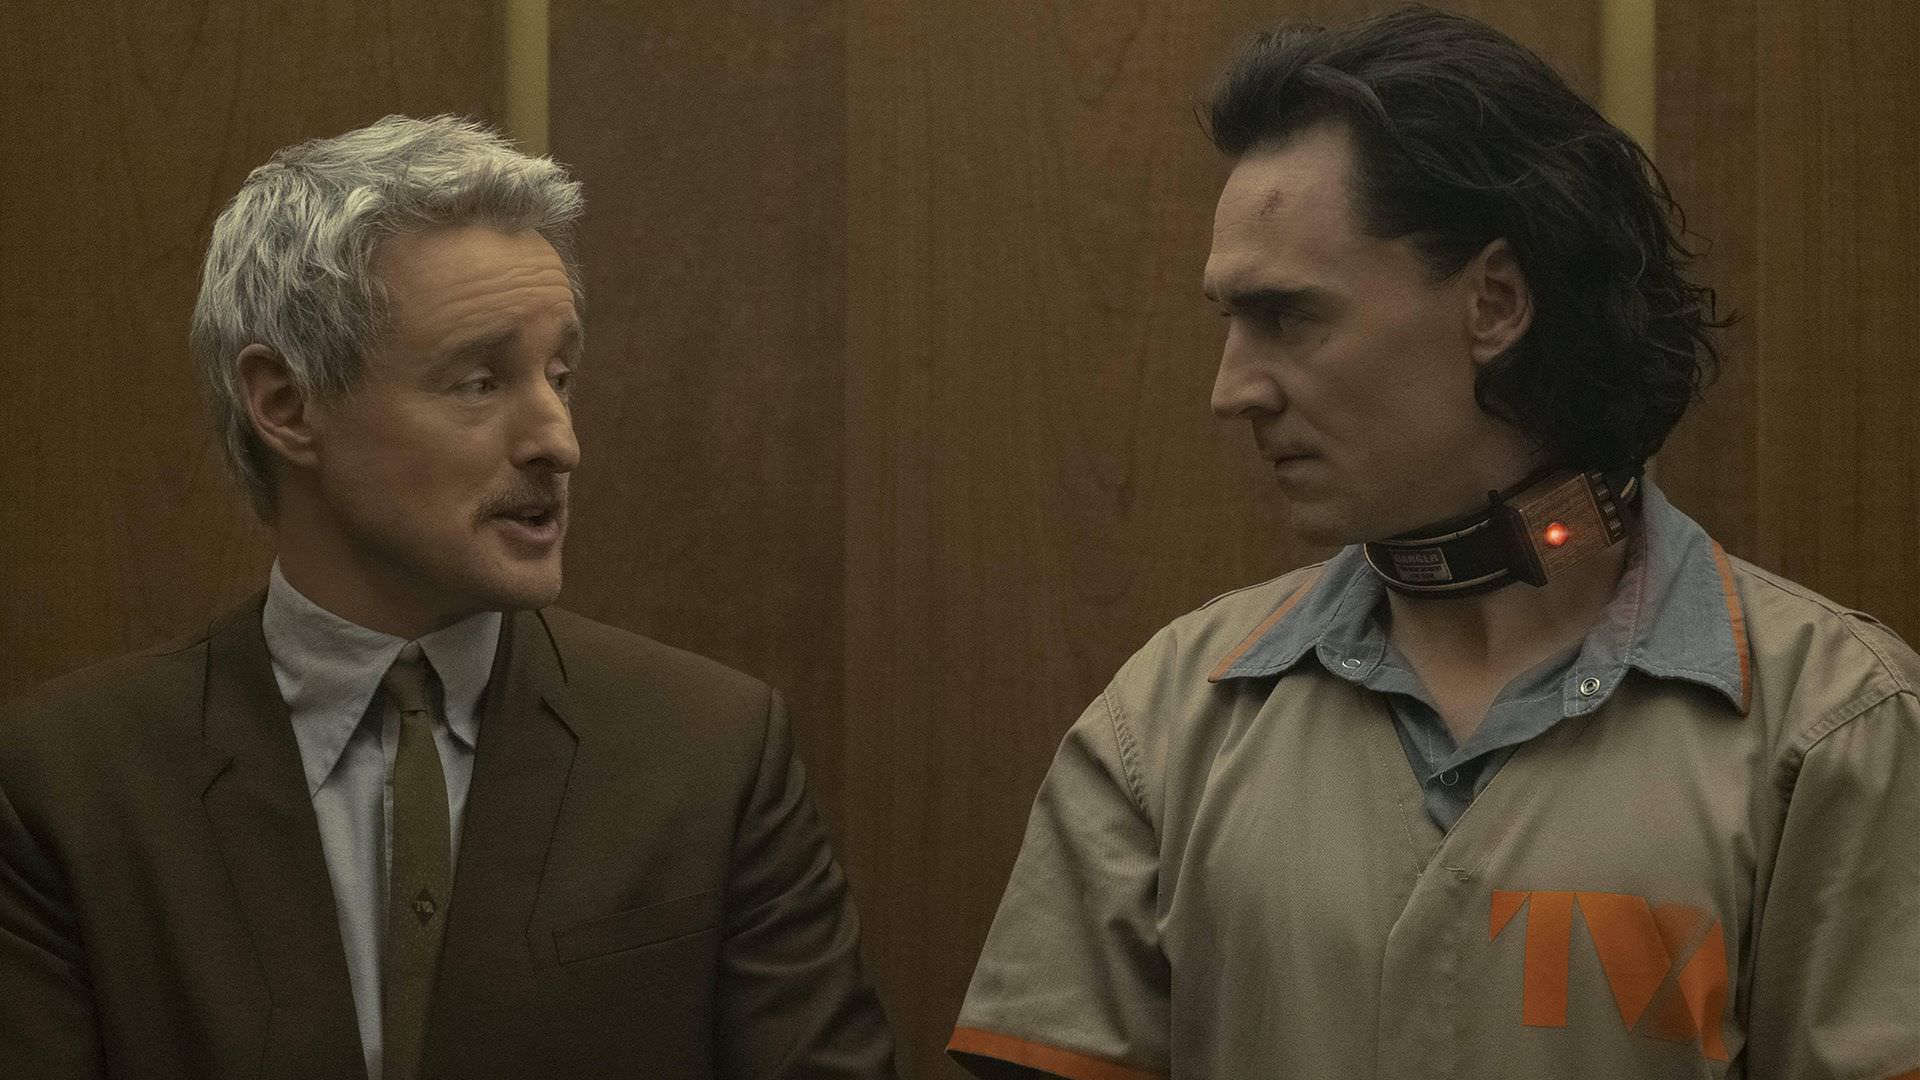 تام هیدلستون در نقش لوکی و اوون ویلسون در نقش ایجنت موبیوس در حال حرف زدن در آسانسور در ساختمان TVA در قسمت اول سریال Loki